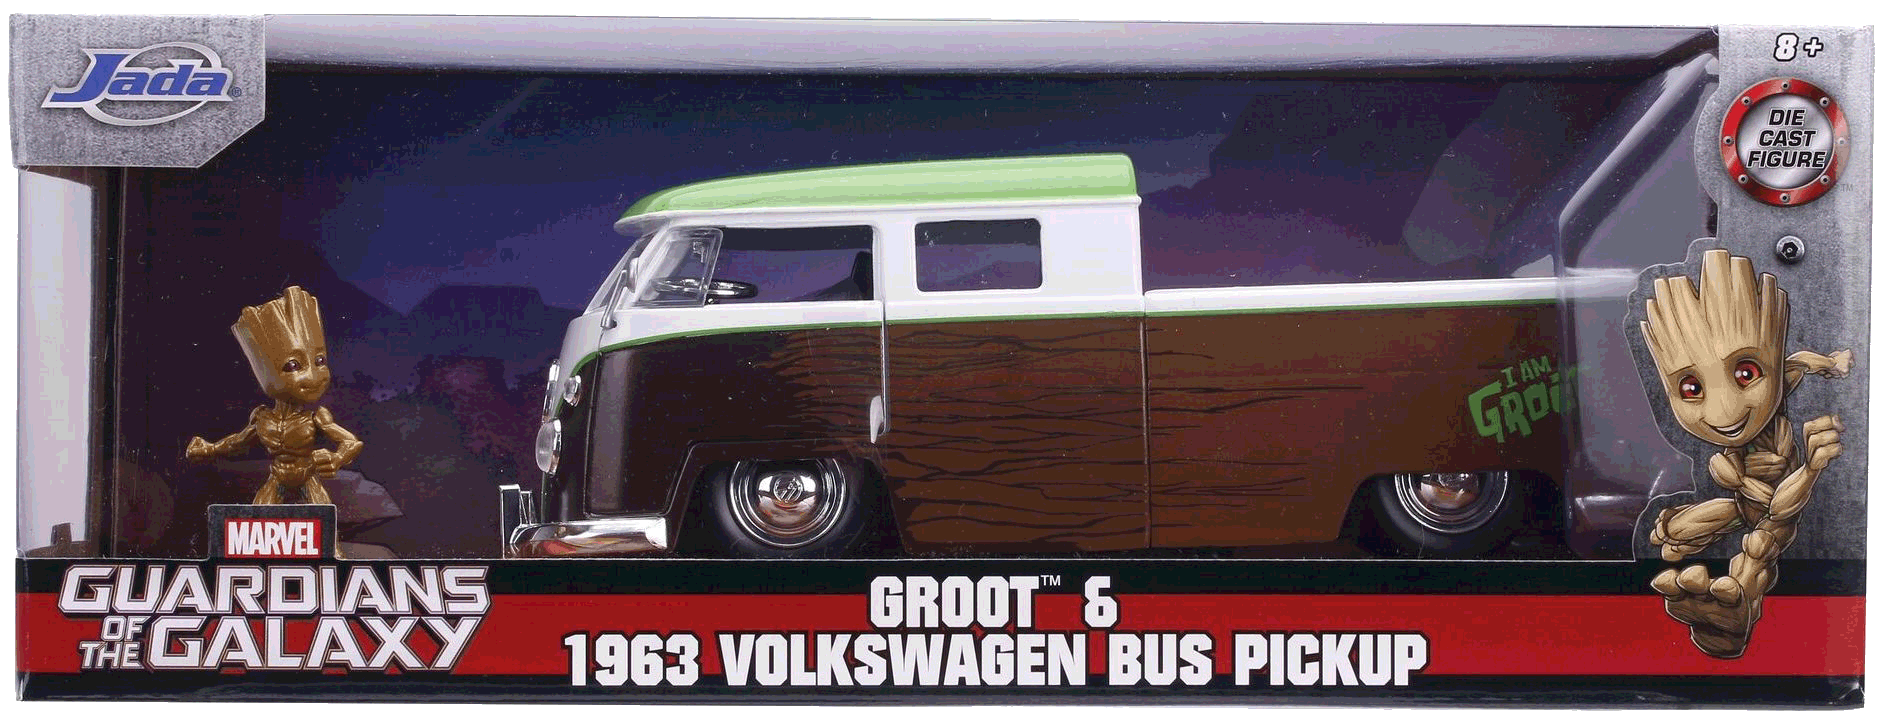 Die Verpackung des 1963 er VW Bus Pickup mit GROOTTM Nr. 6. Die MARVEL Serie Guardians of the Galaxy stand hier Pate.  